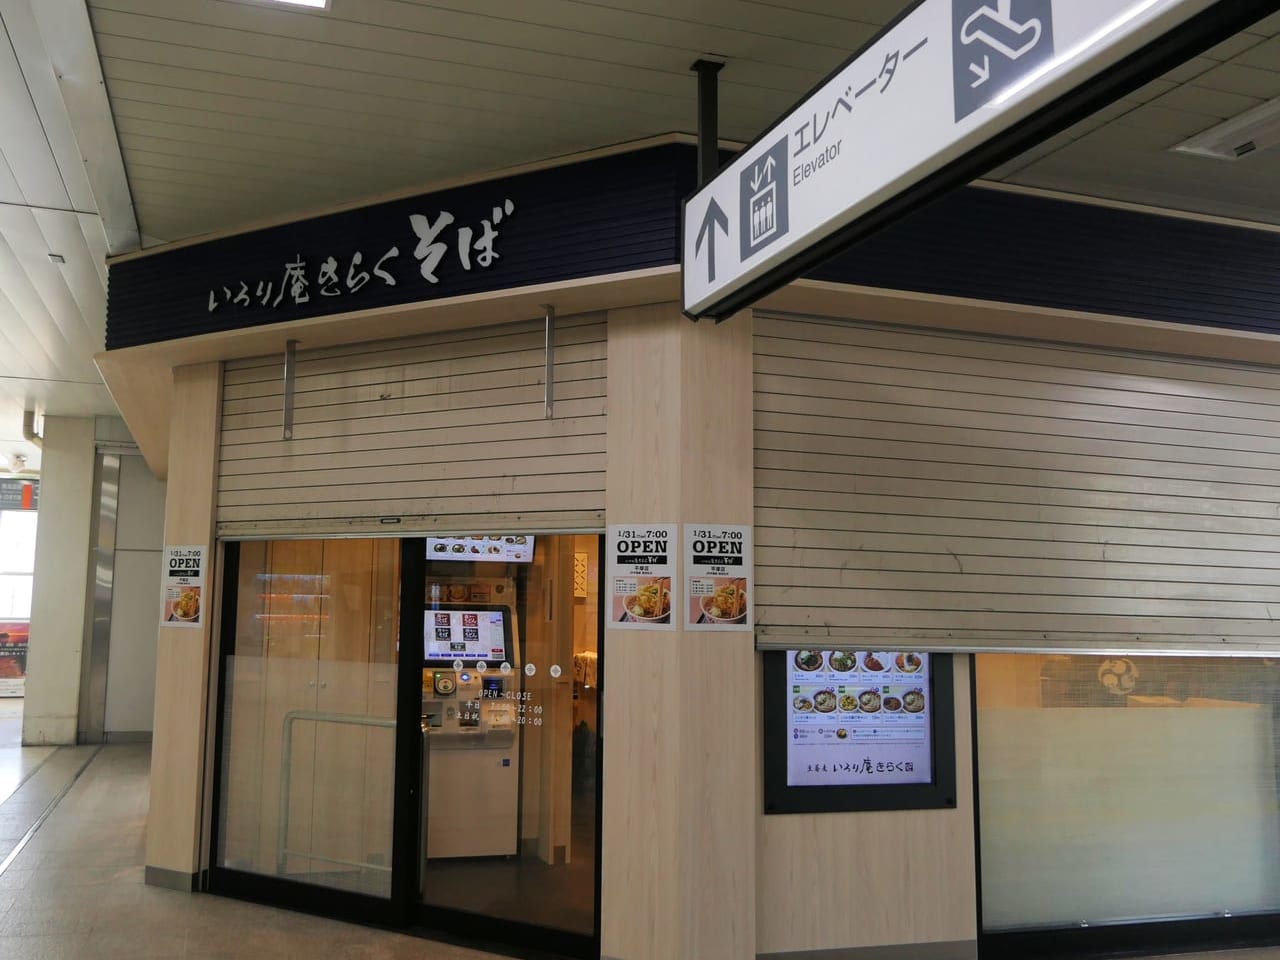 臨時休業していた「いろり庵きらく 平塚店」が1月31日（火）にリニューアルオープン！